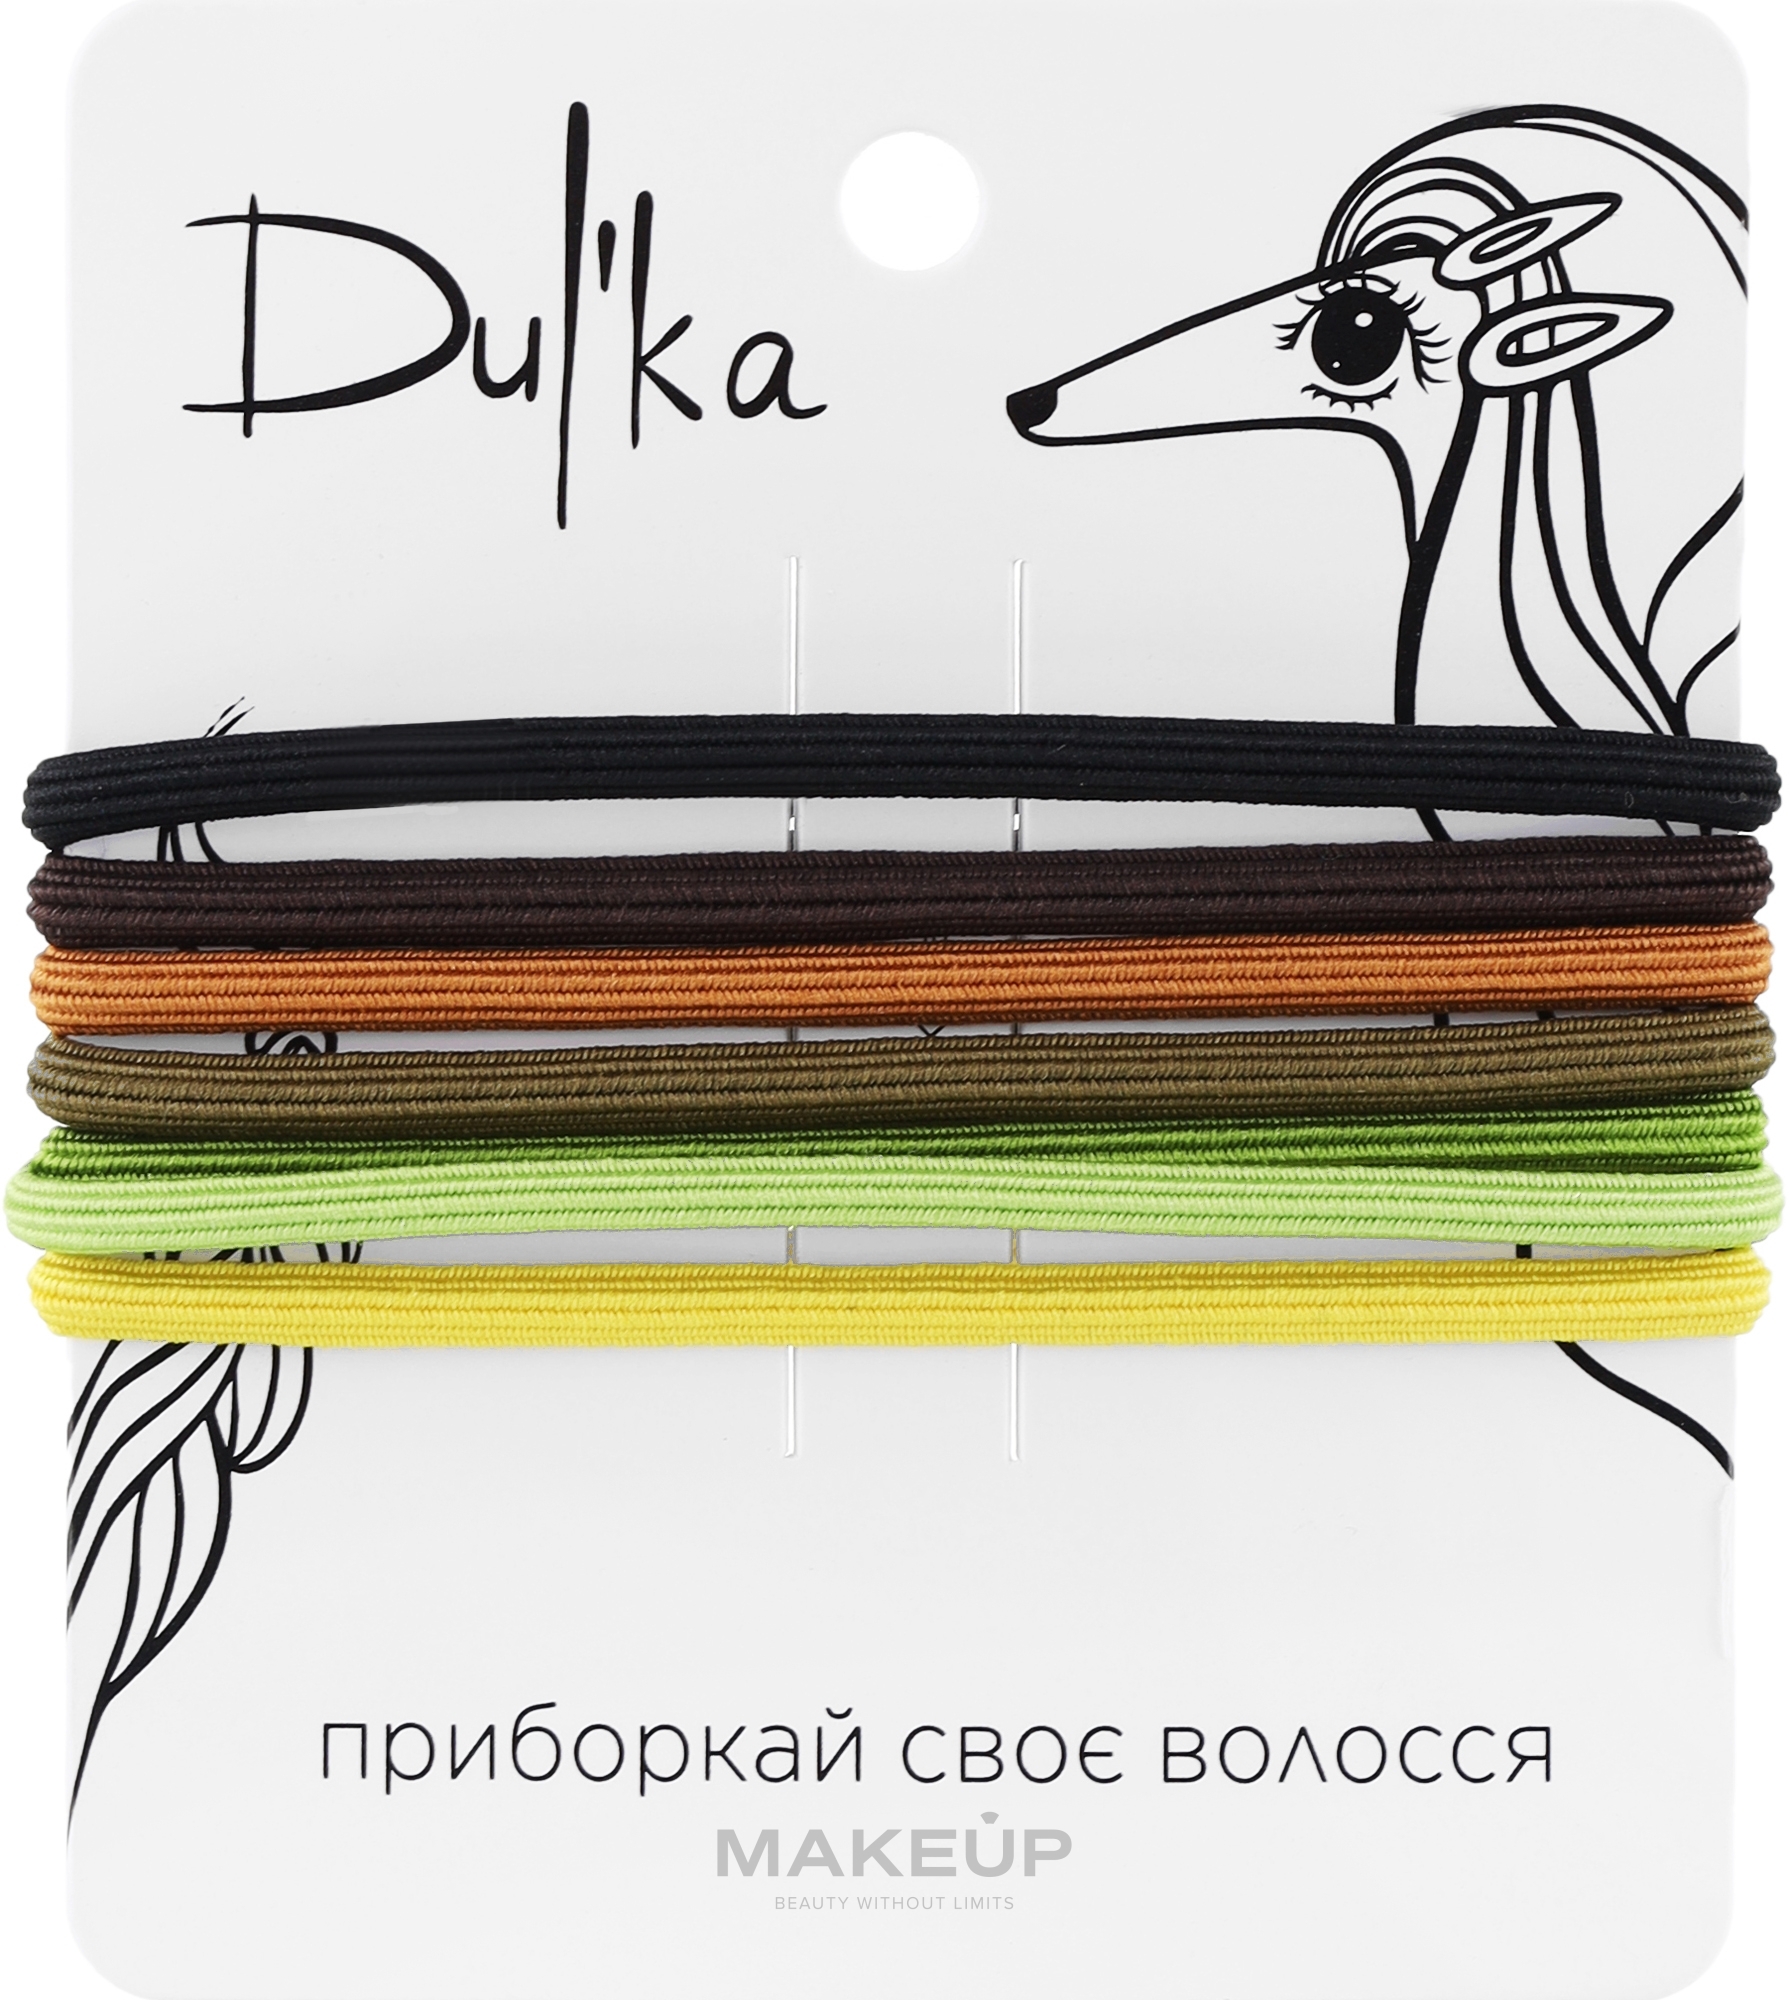 Набор разноцветных резинок для волос UH717709, 7 шт - Dulka  — фото 7шт